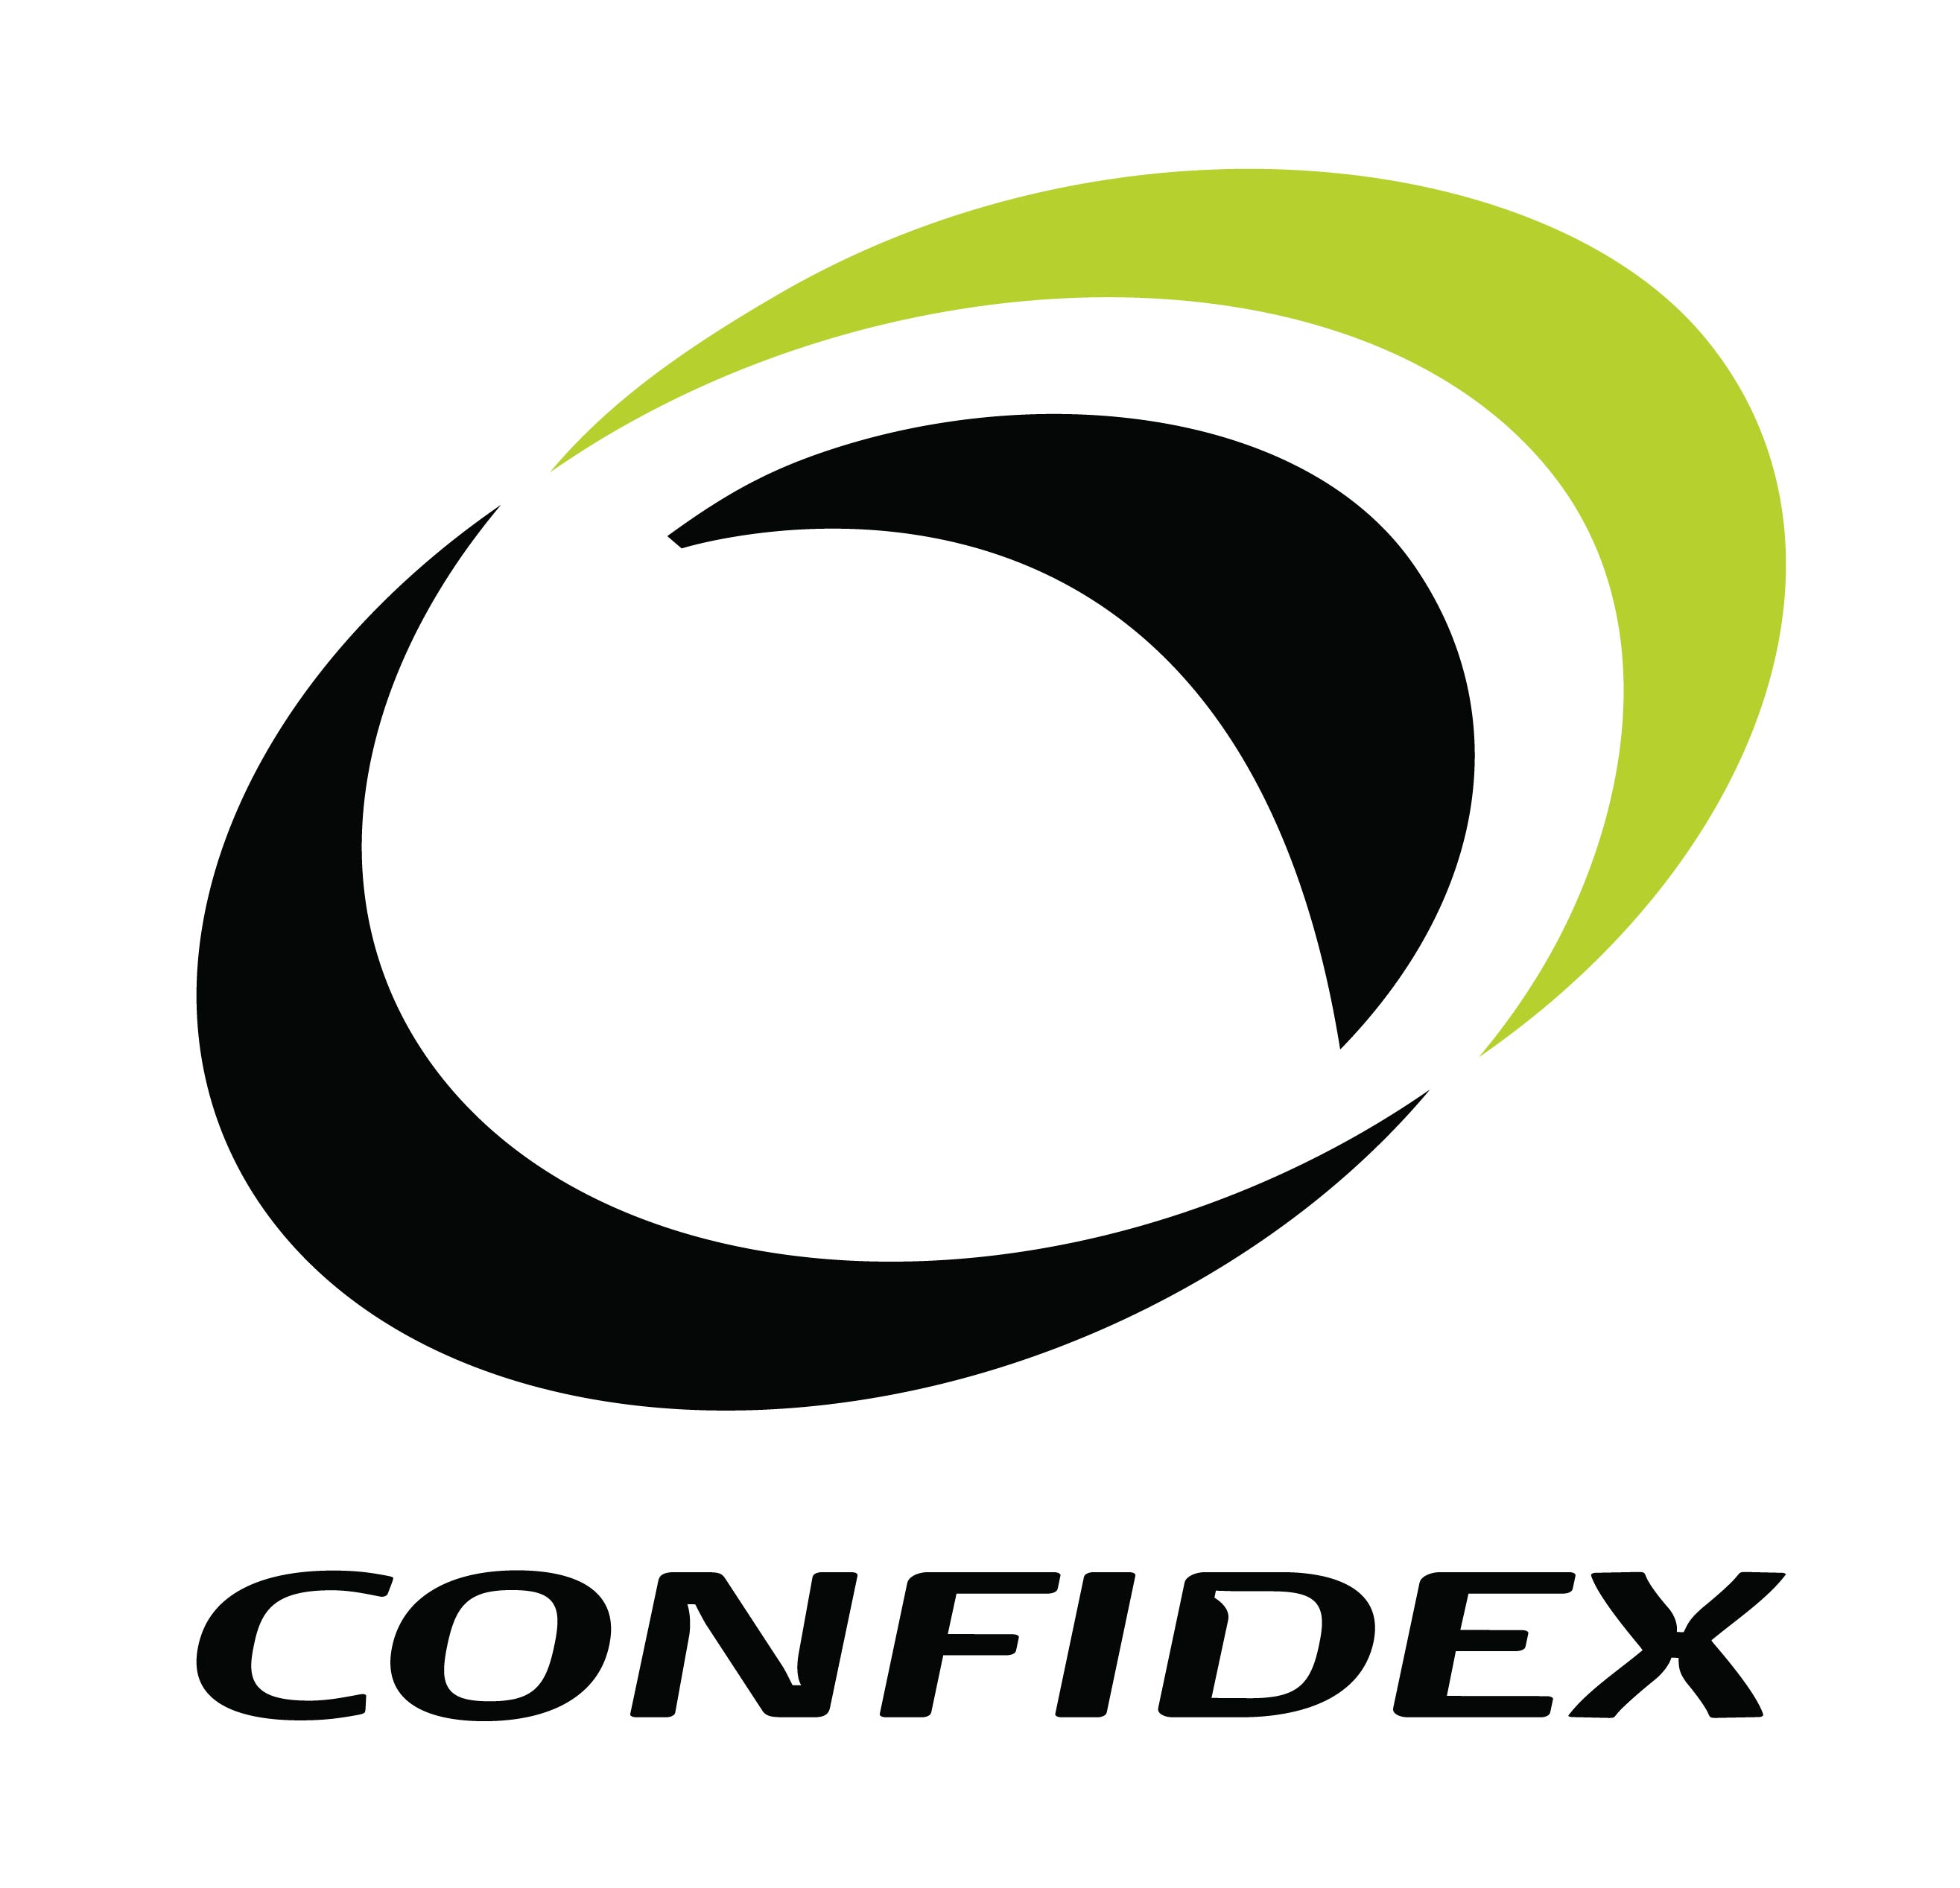 Confidex标识